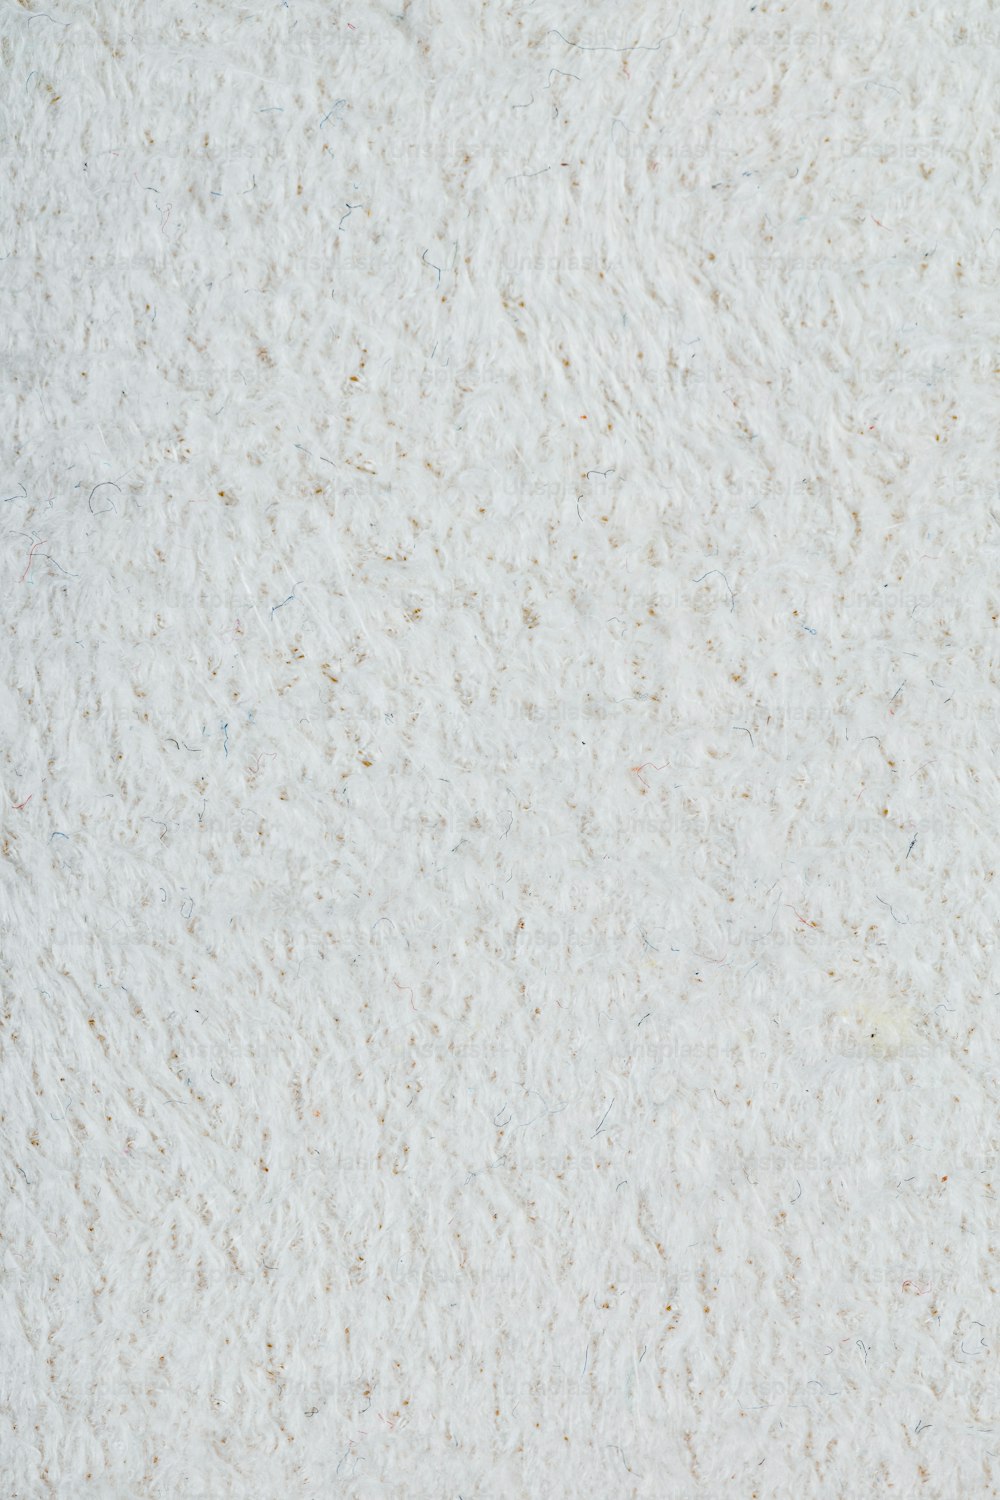 um close up de uma superfície branca com pequenos pontos